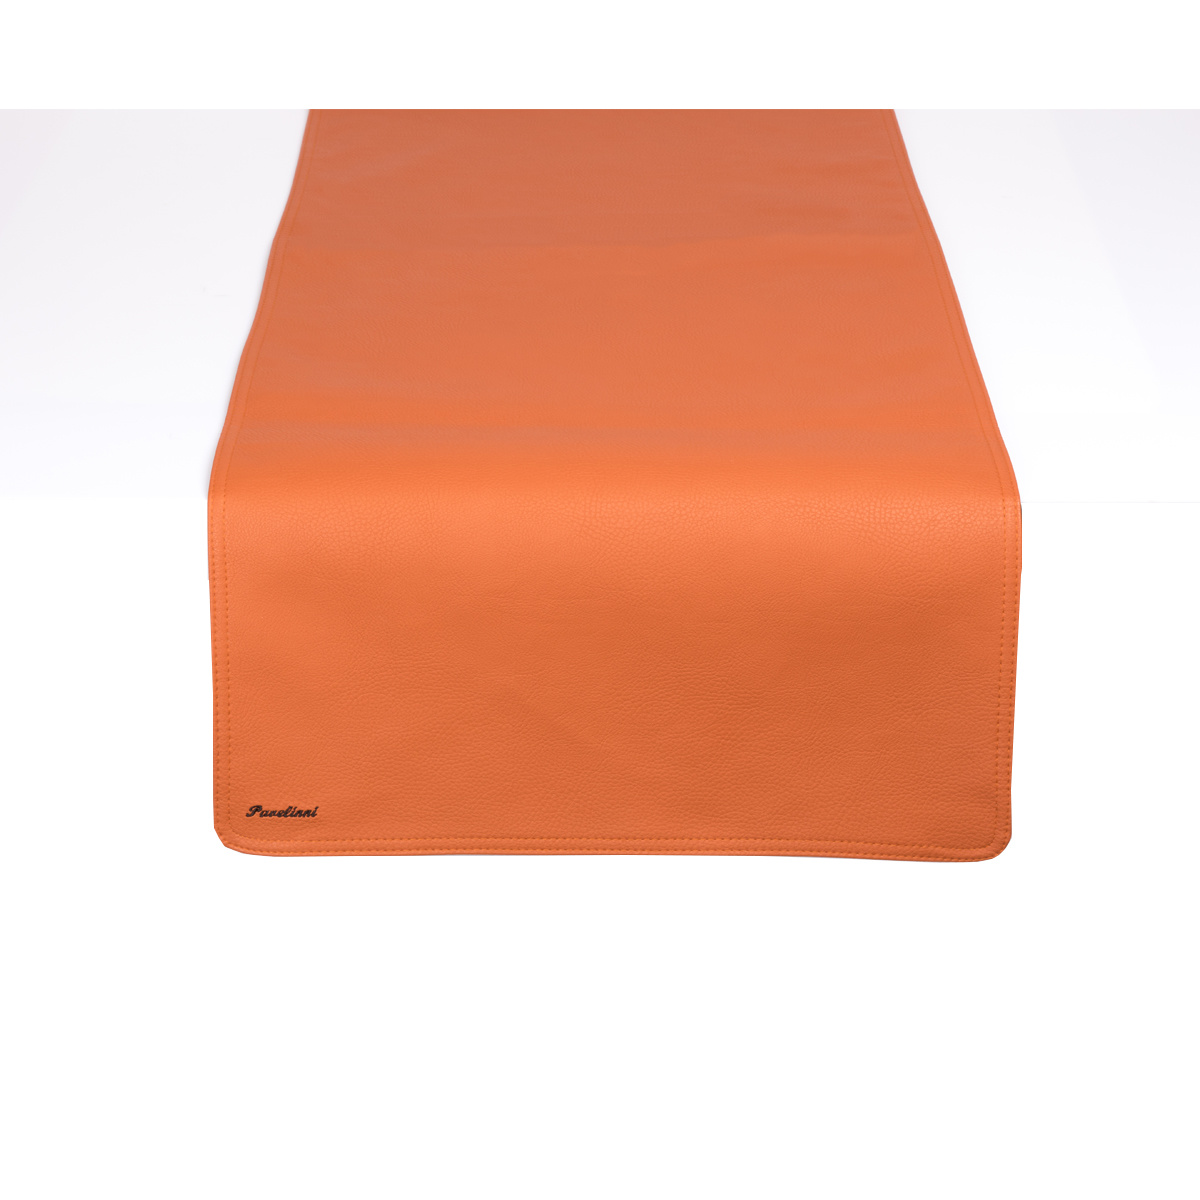 Leder Tischläufer | Classic Karma | Einseitig | 450x1200mm | Erhältlich in 7 Farben